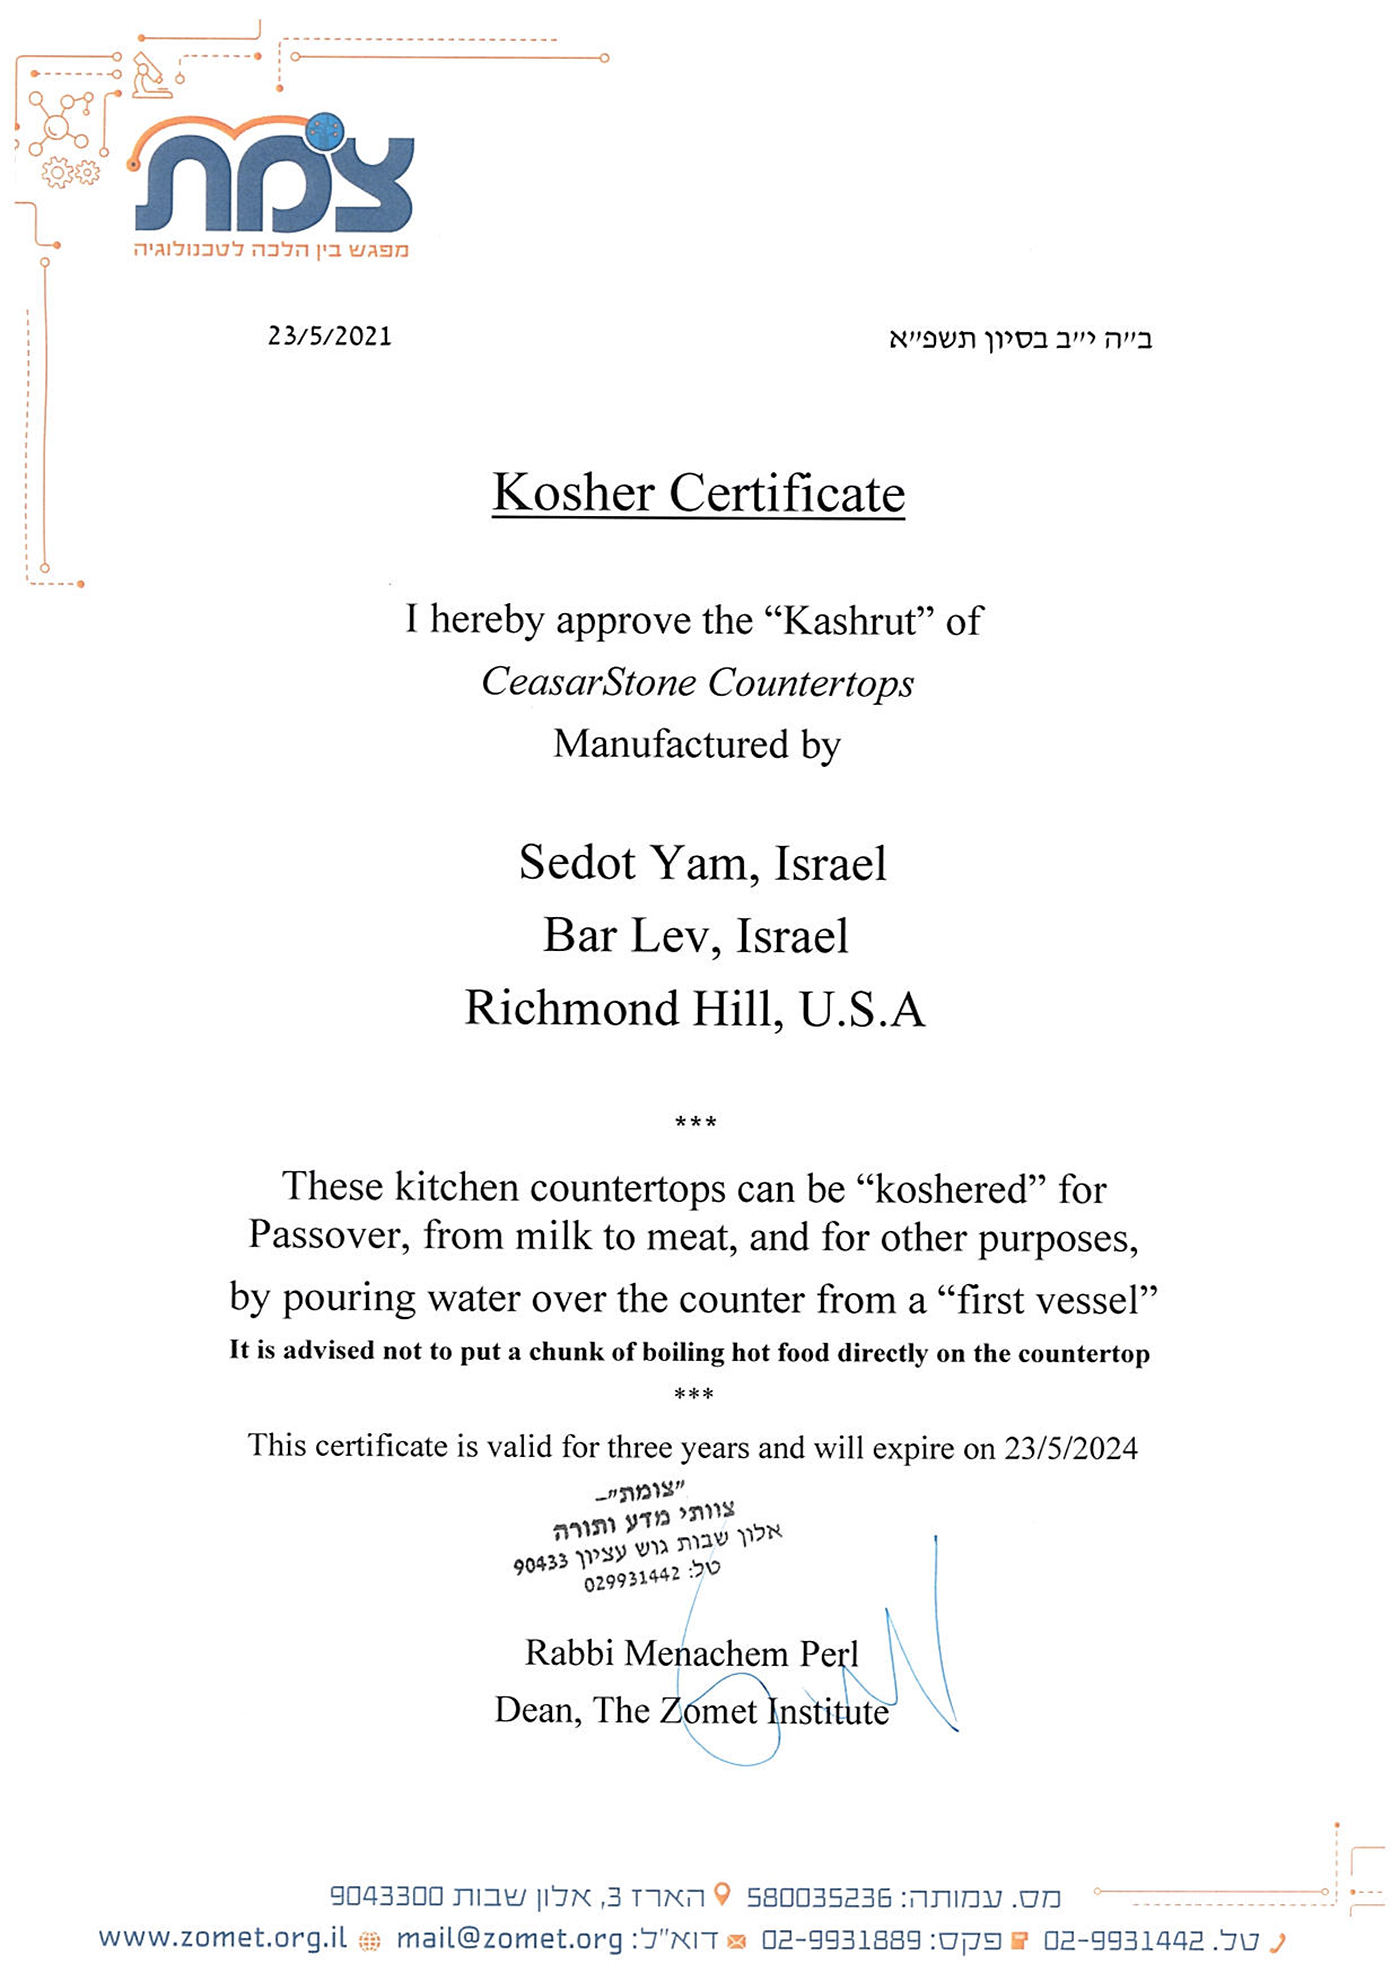 Caesarstone kosher certificate